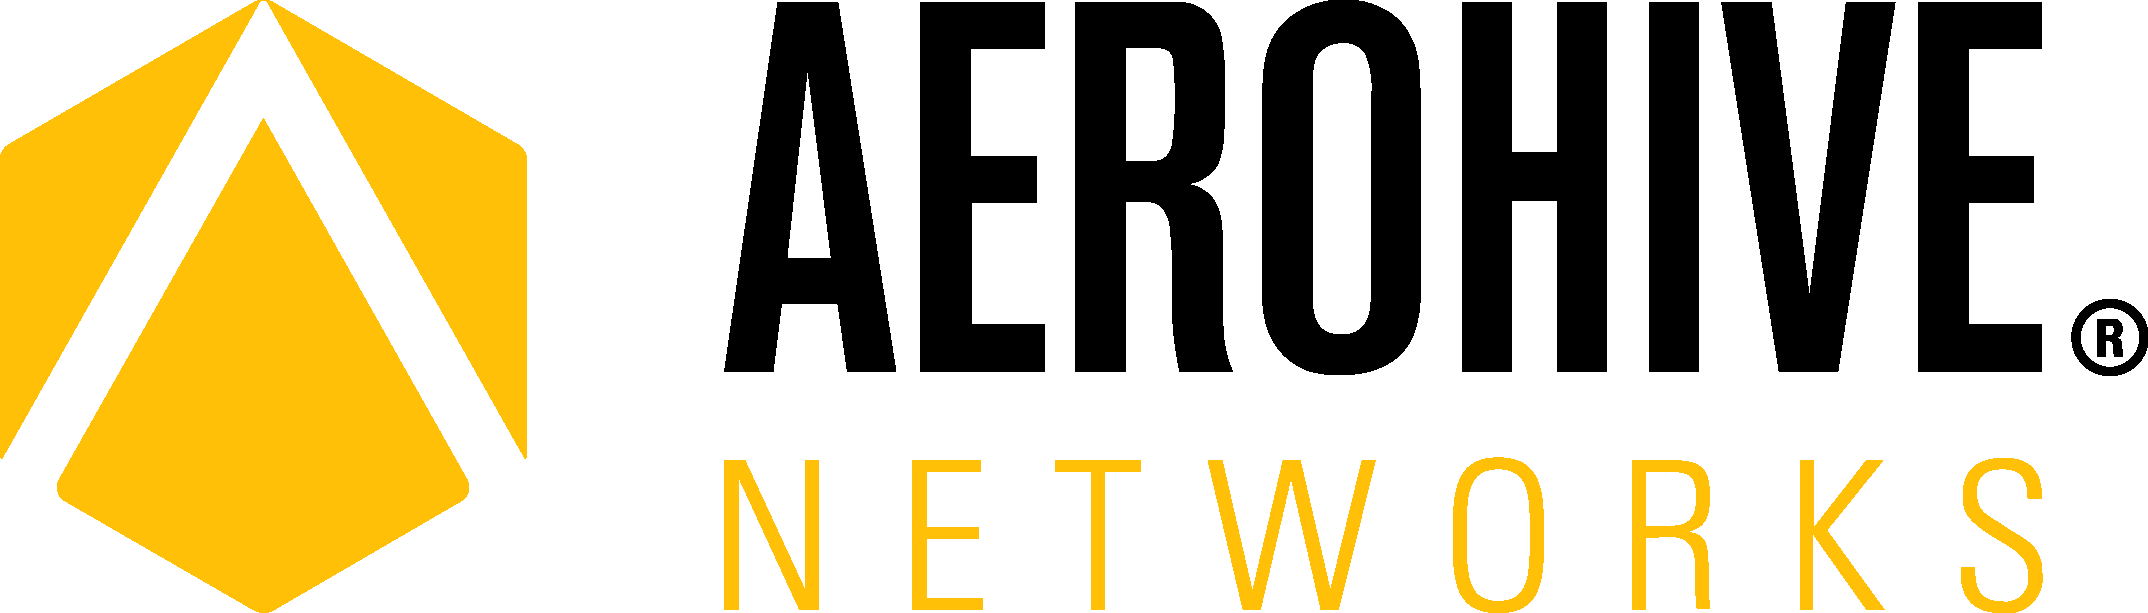 Aerohive Logo